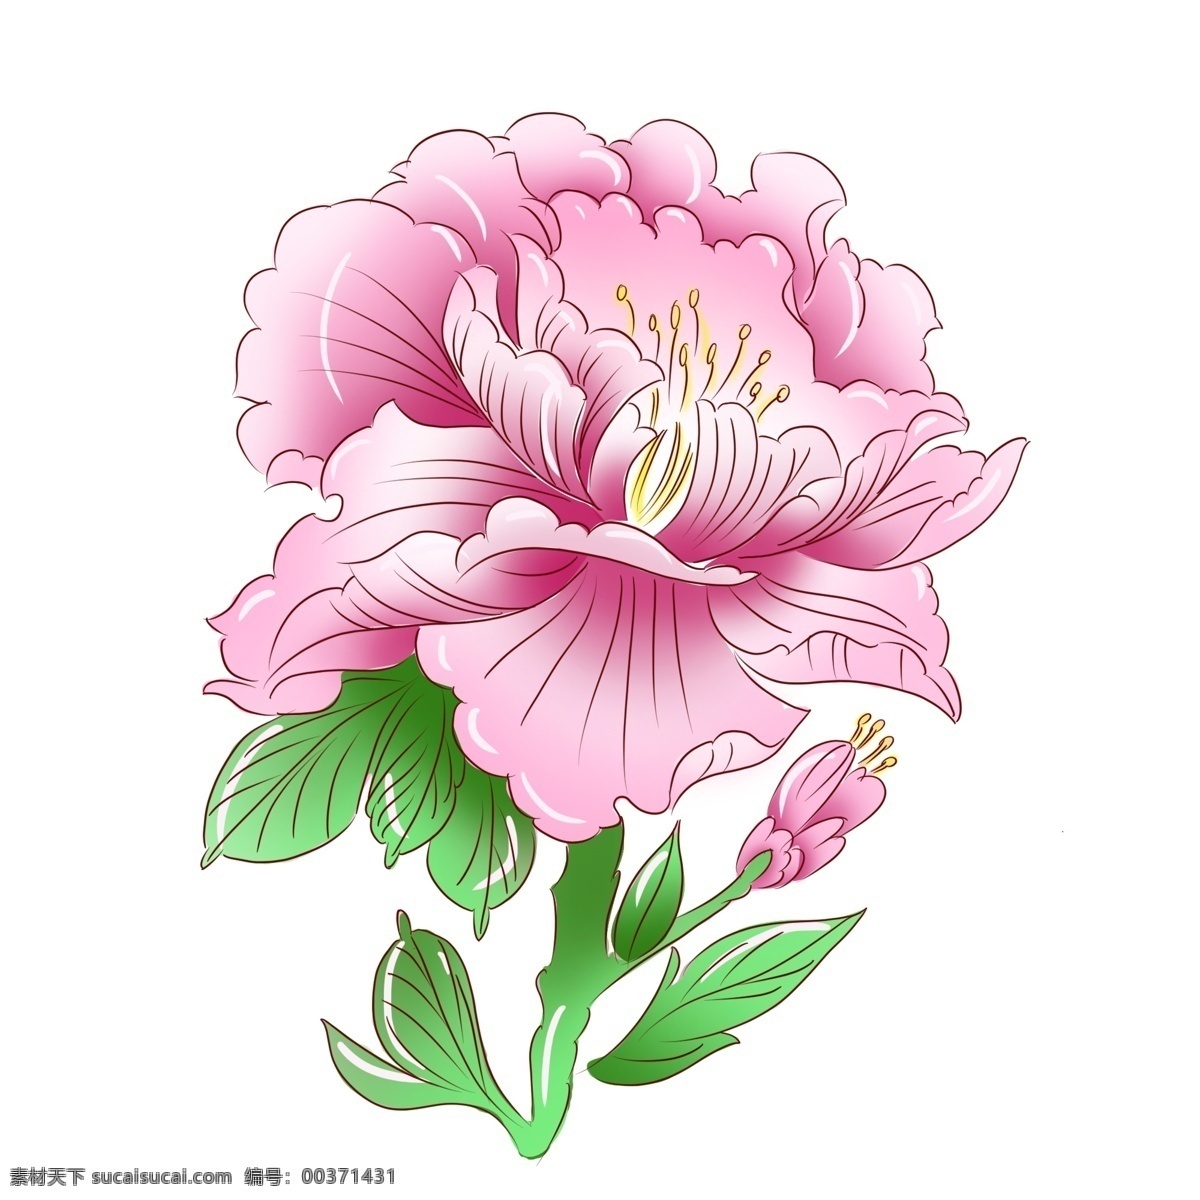 手绘 植物 粉红色 牡丹花 手绘花 手绘植物 手绘牡丹 花卉 牡丹